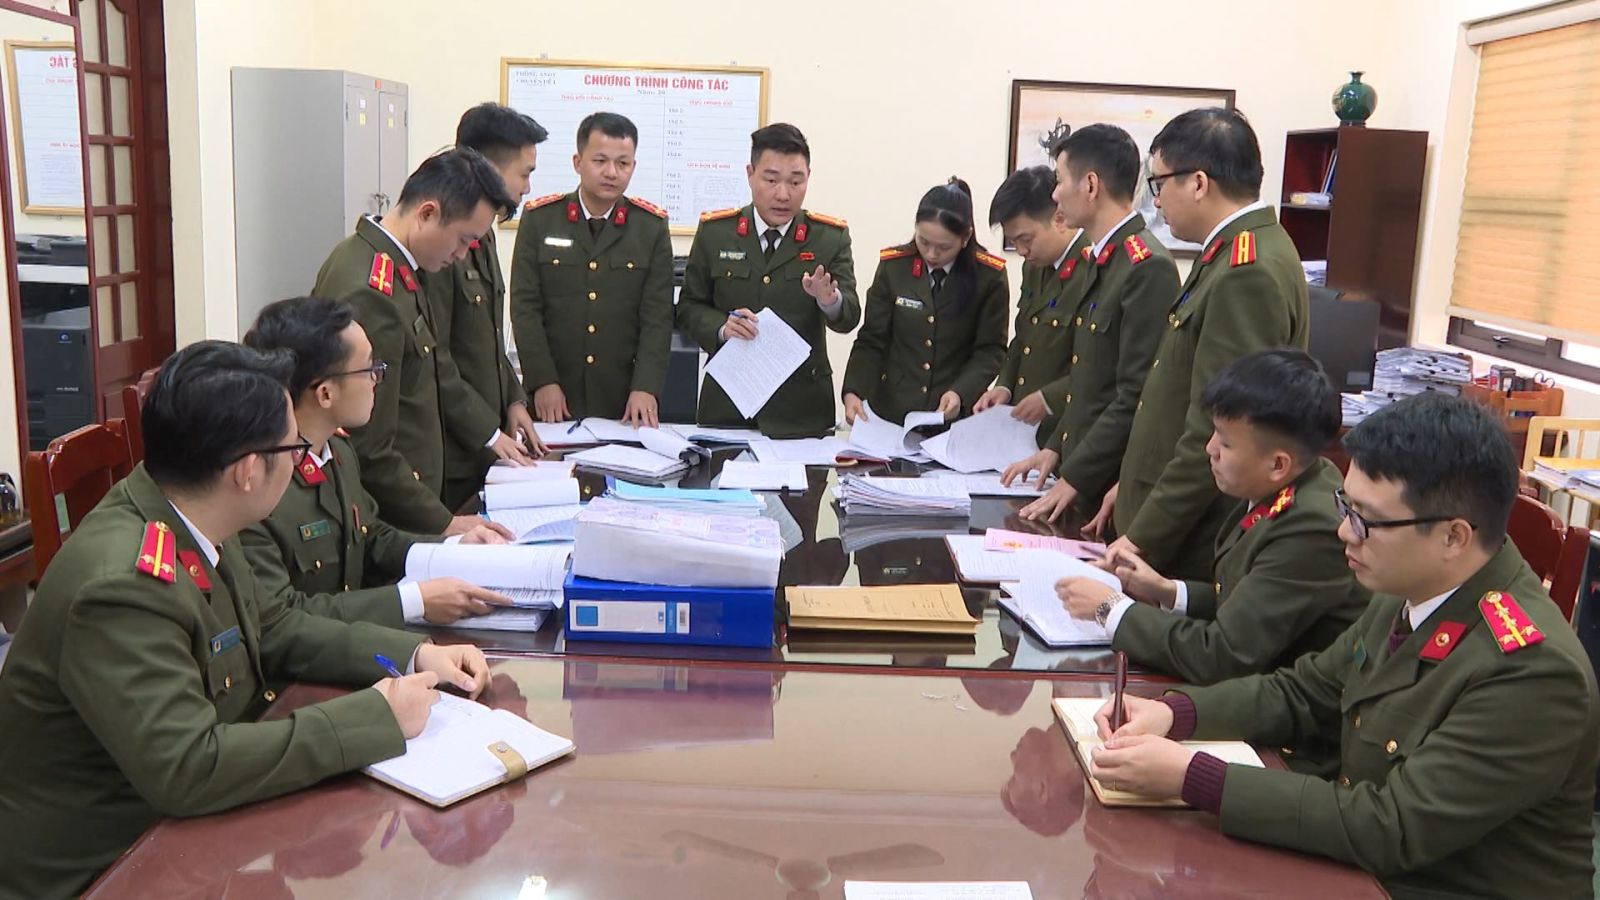 Hàng loạt cán bộ ở Sầm Sơn bị khởi tố vì đưa, nhận hối lộ- Ảnh 2.